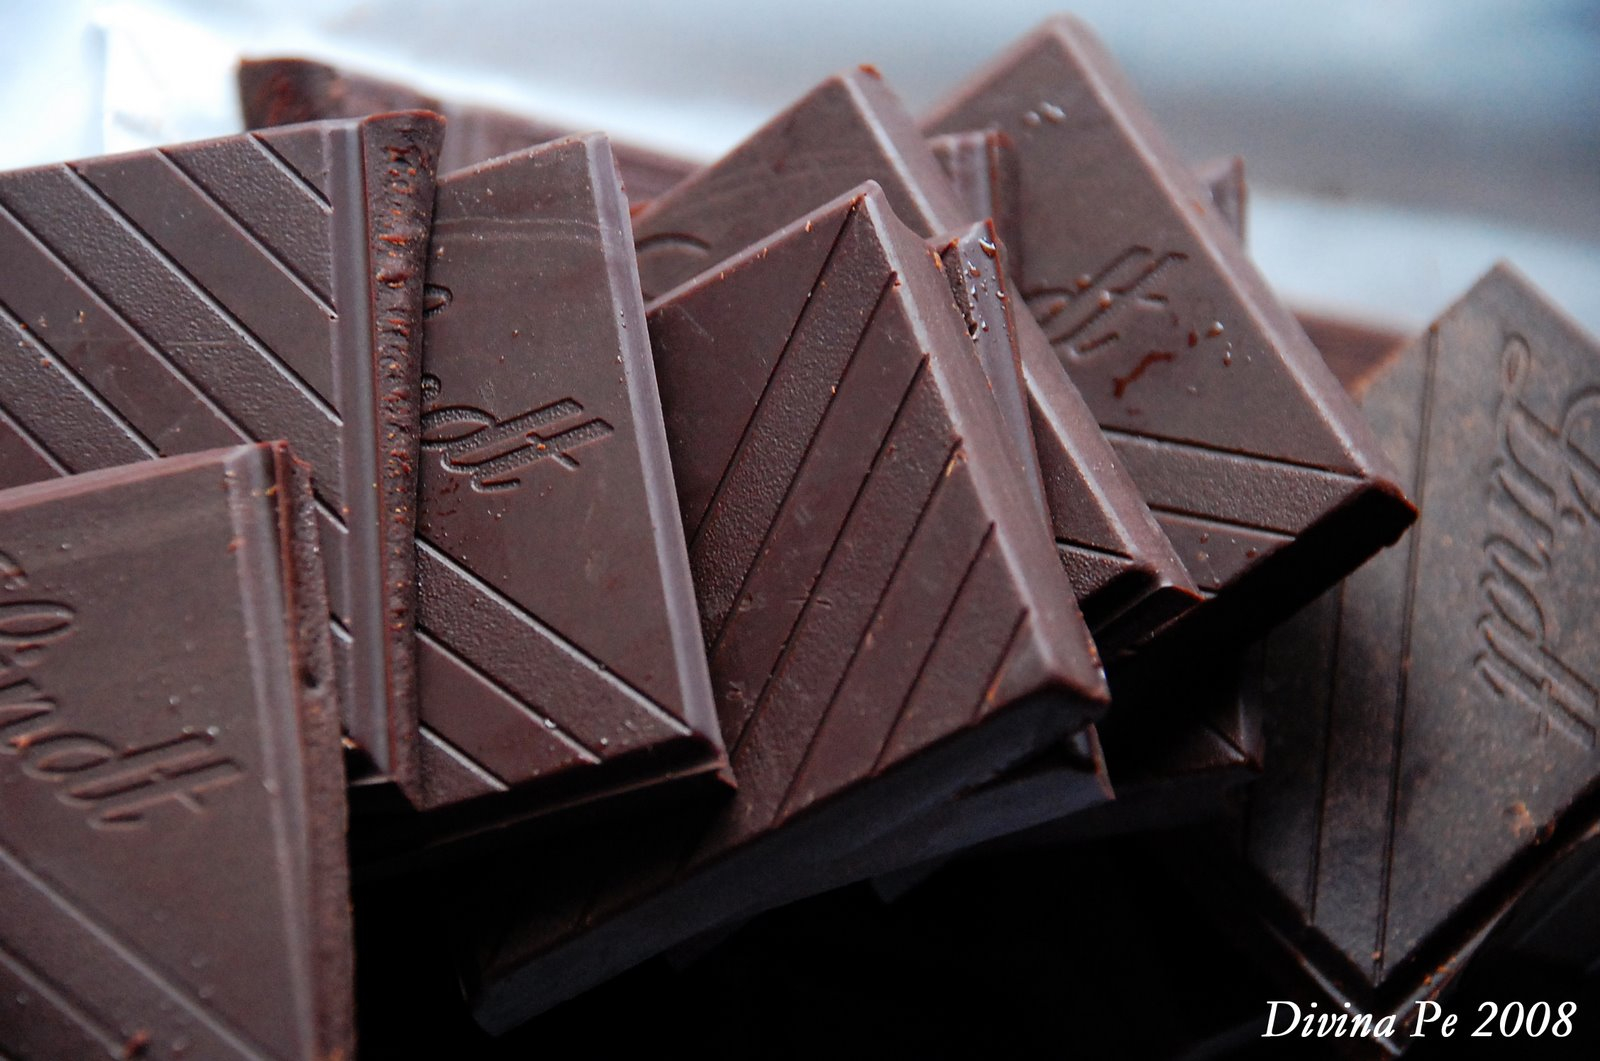 Ради любви к шоколаду жительница Покрова пошла на преступление